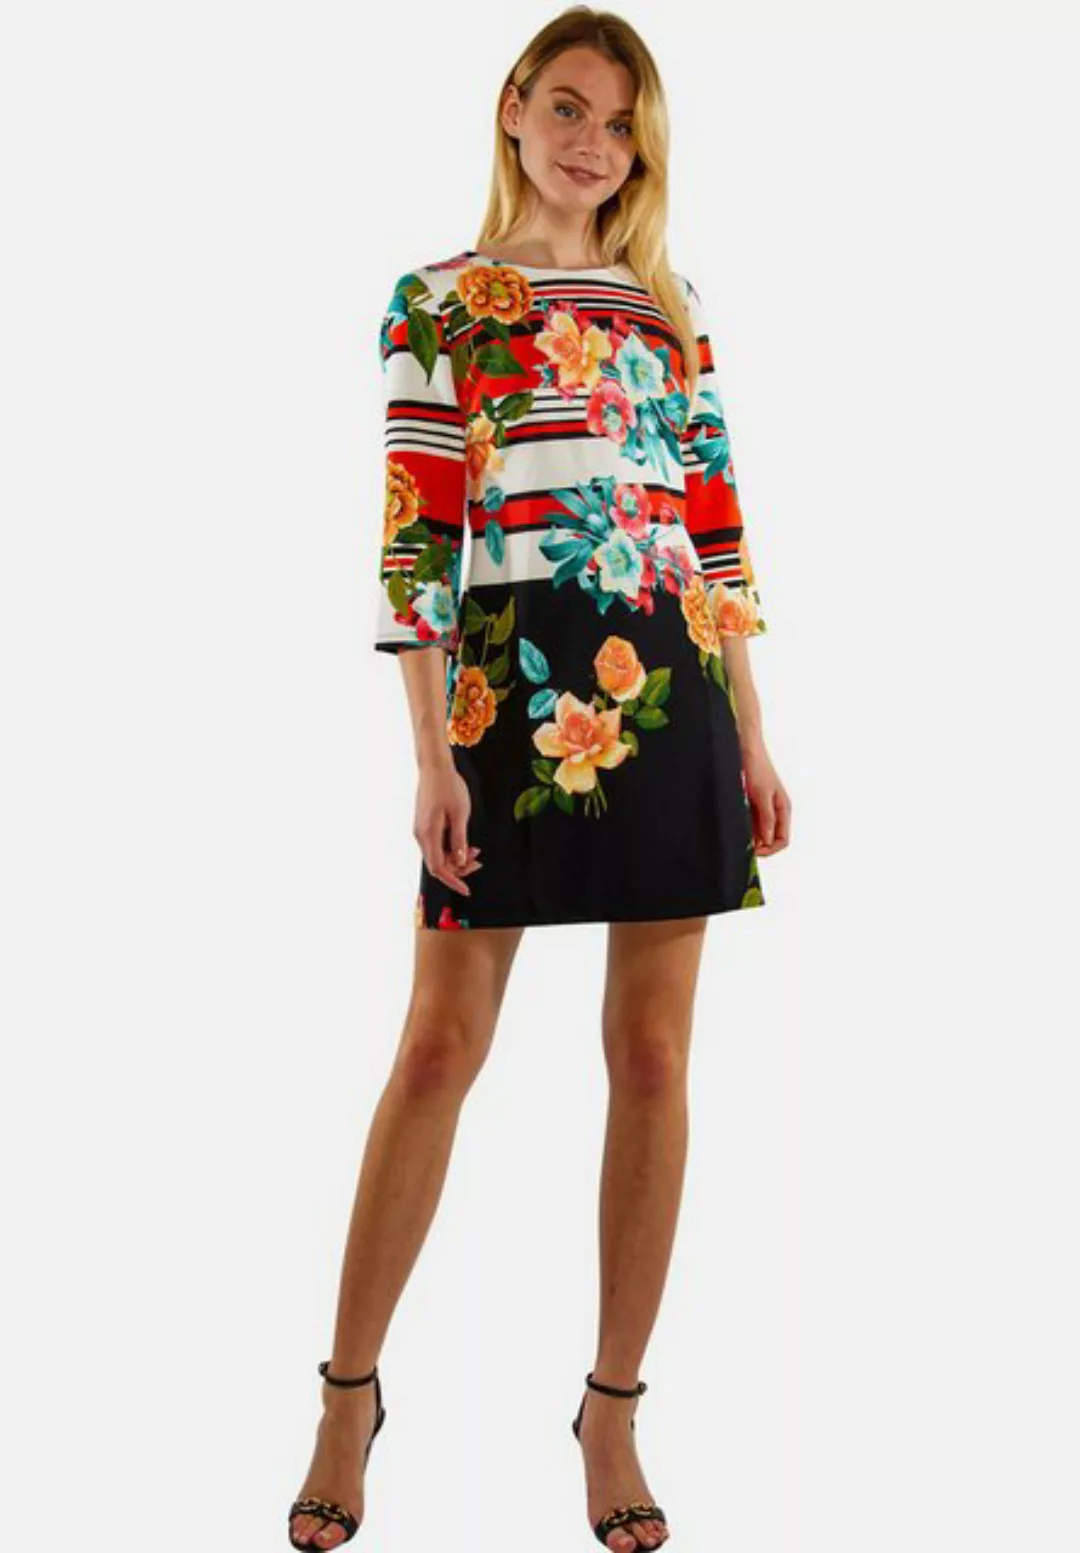 Tooche Minikleid Flowerpower Geblümtes Kleid für jede Gelegenheit günstig online kaufen